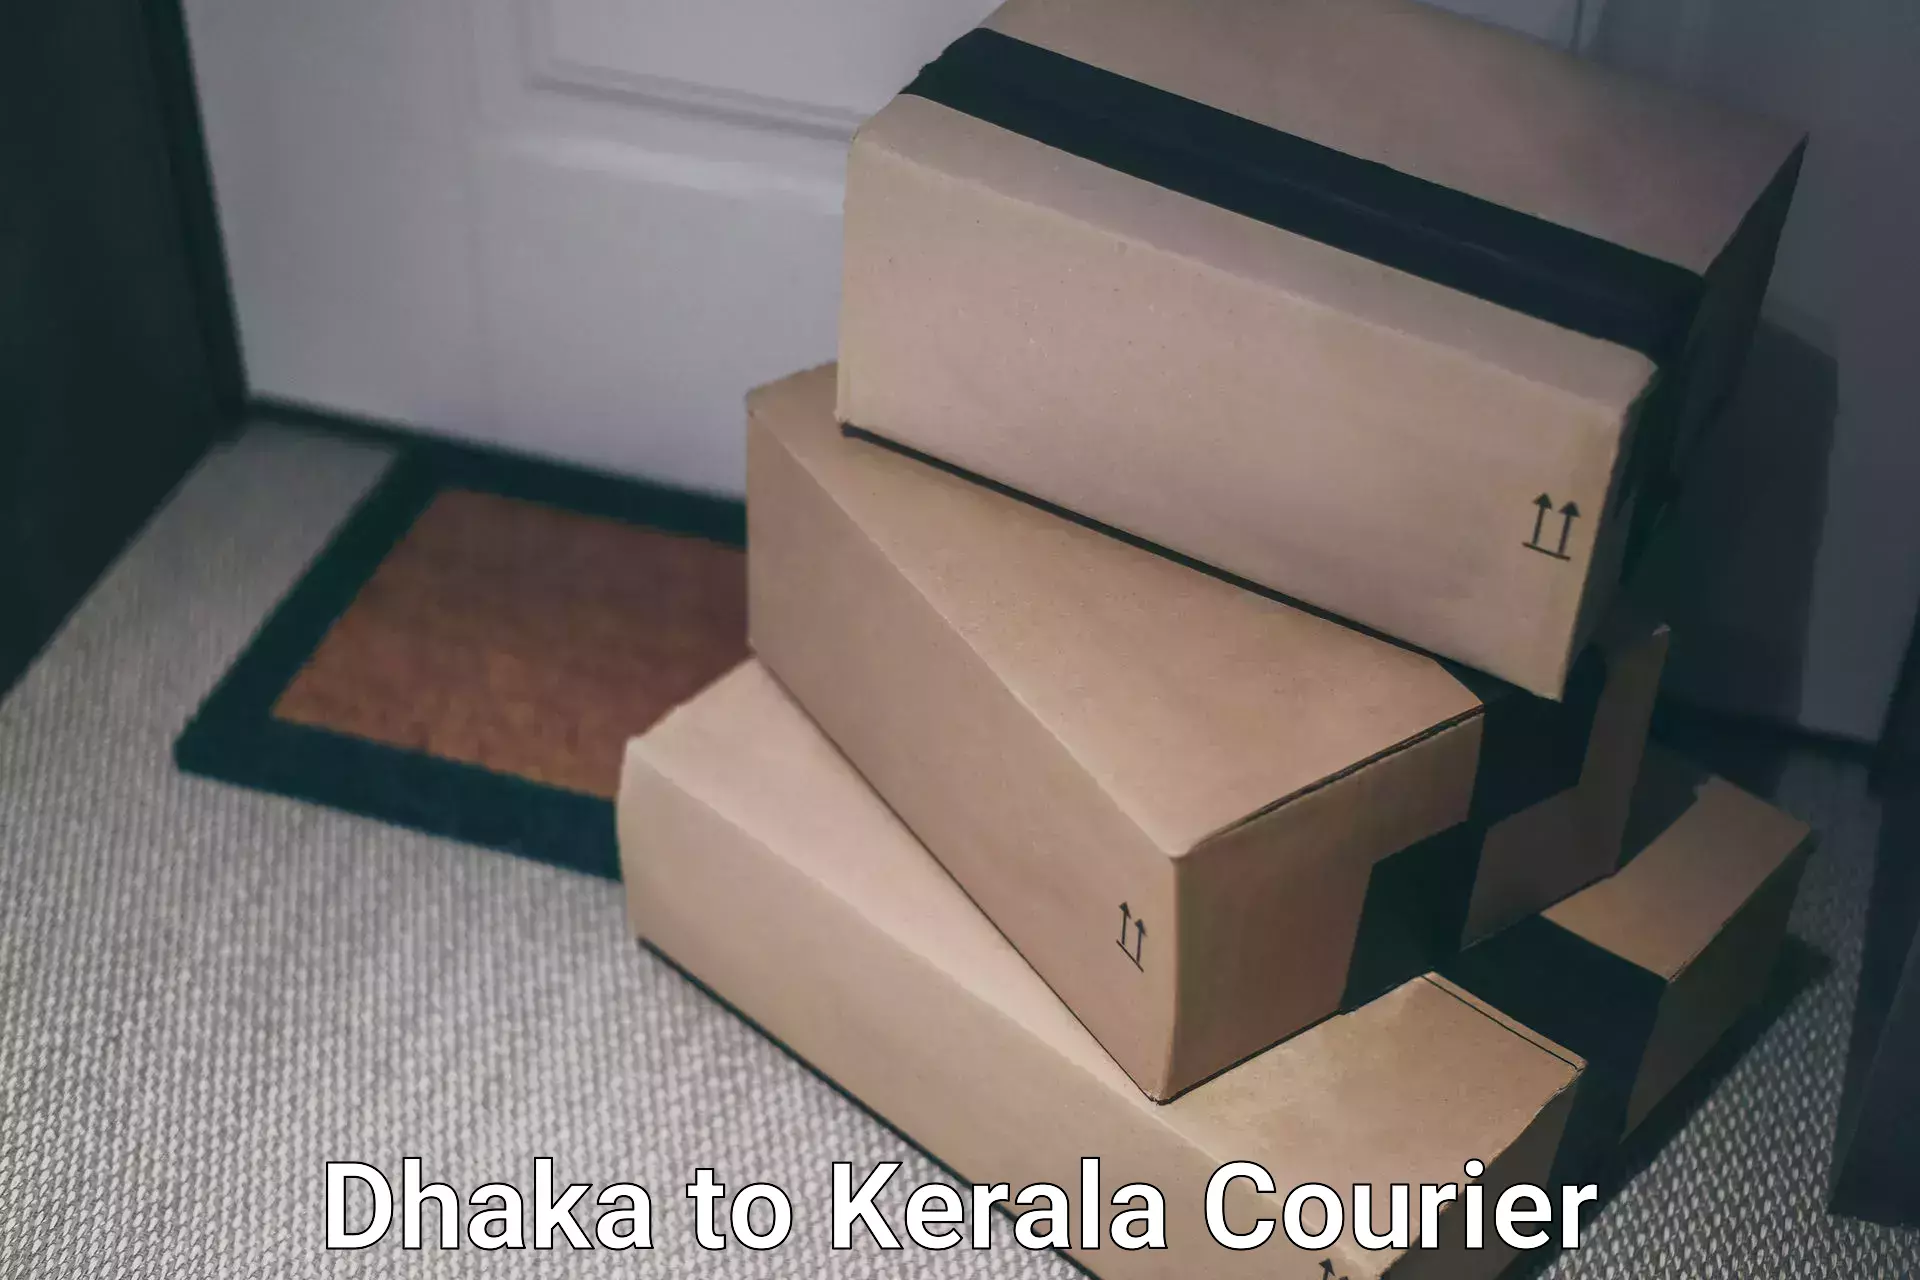 Courier service comparison Dhaka to Adur Kla